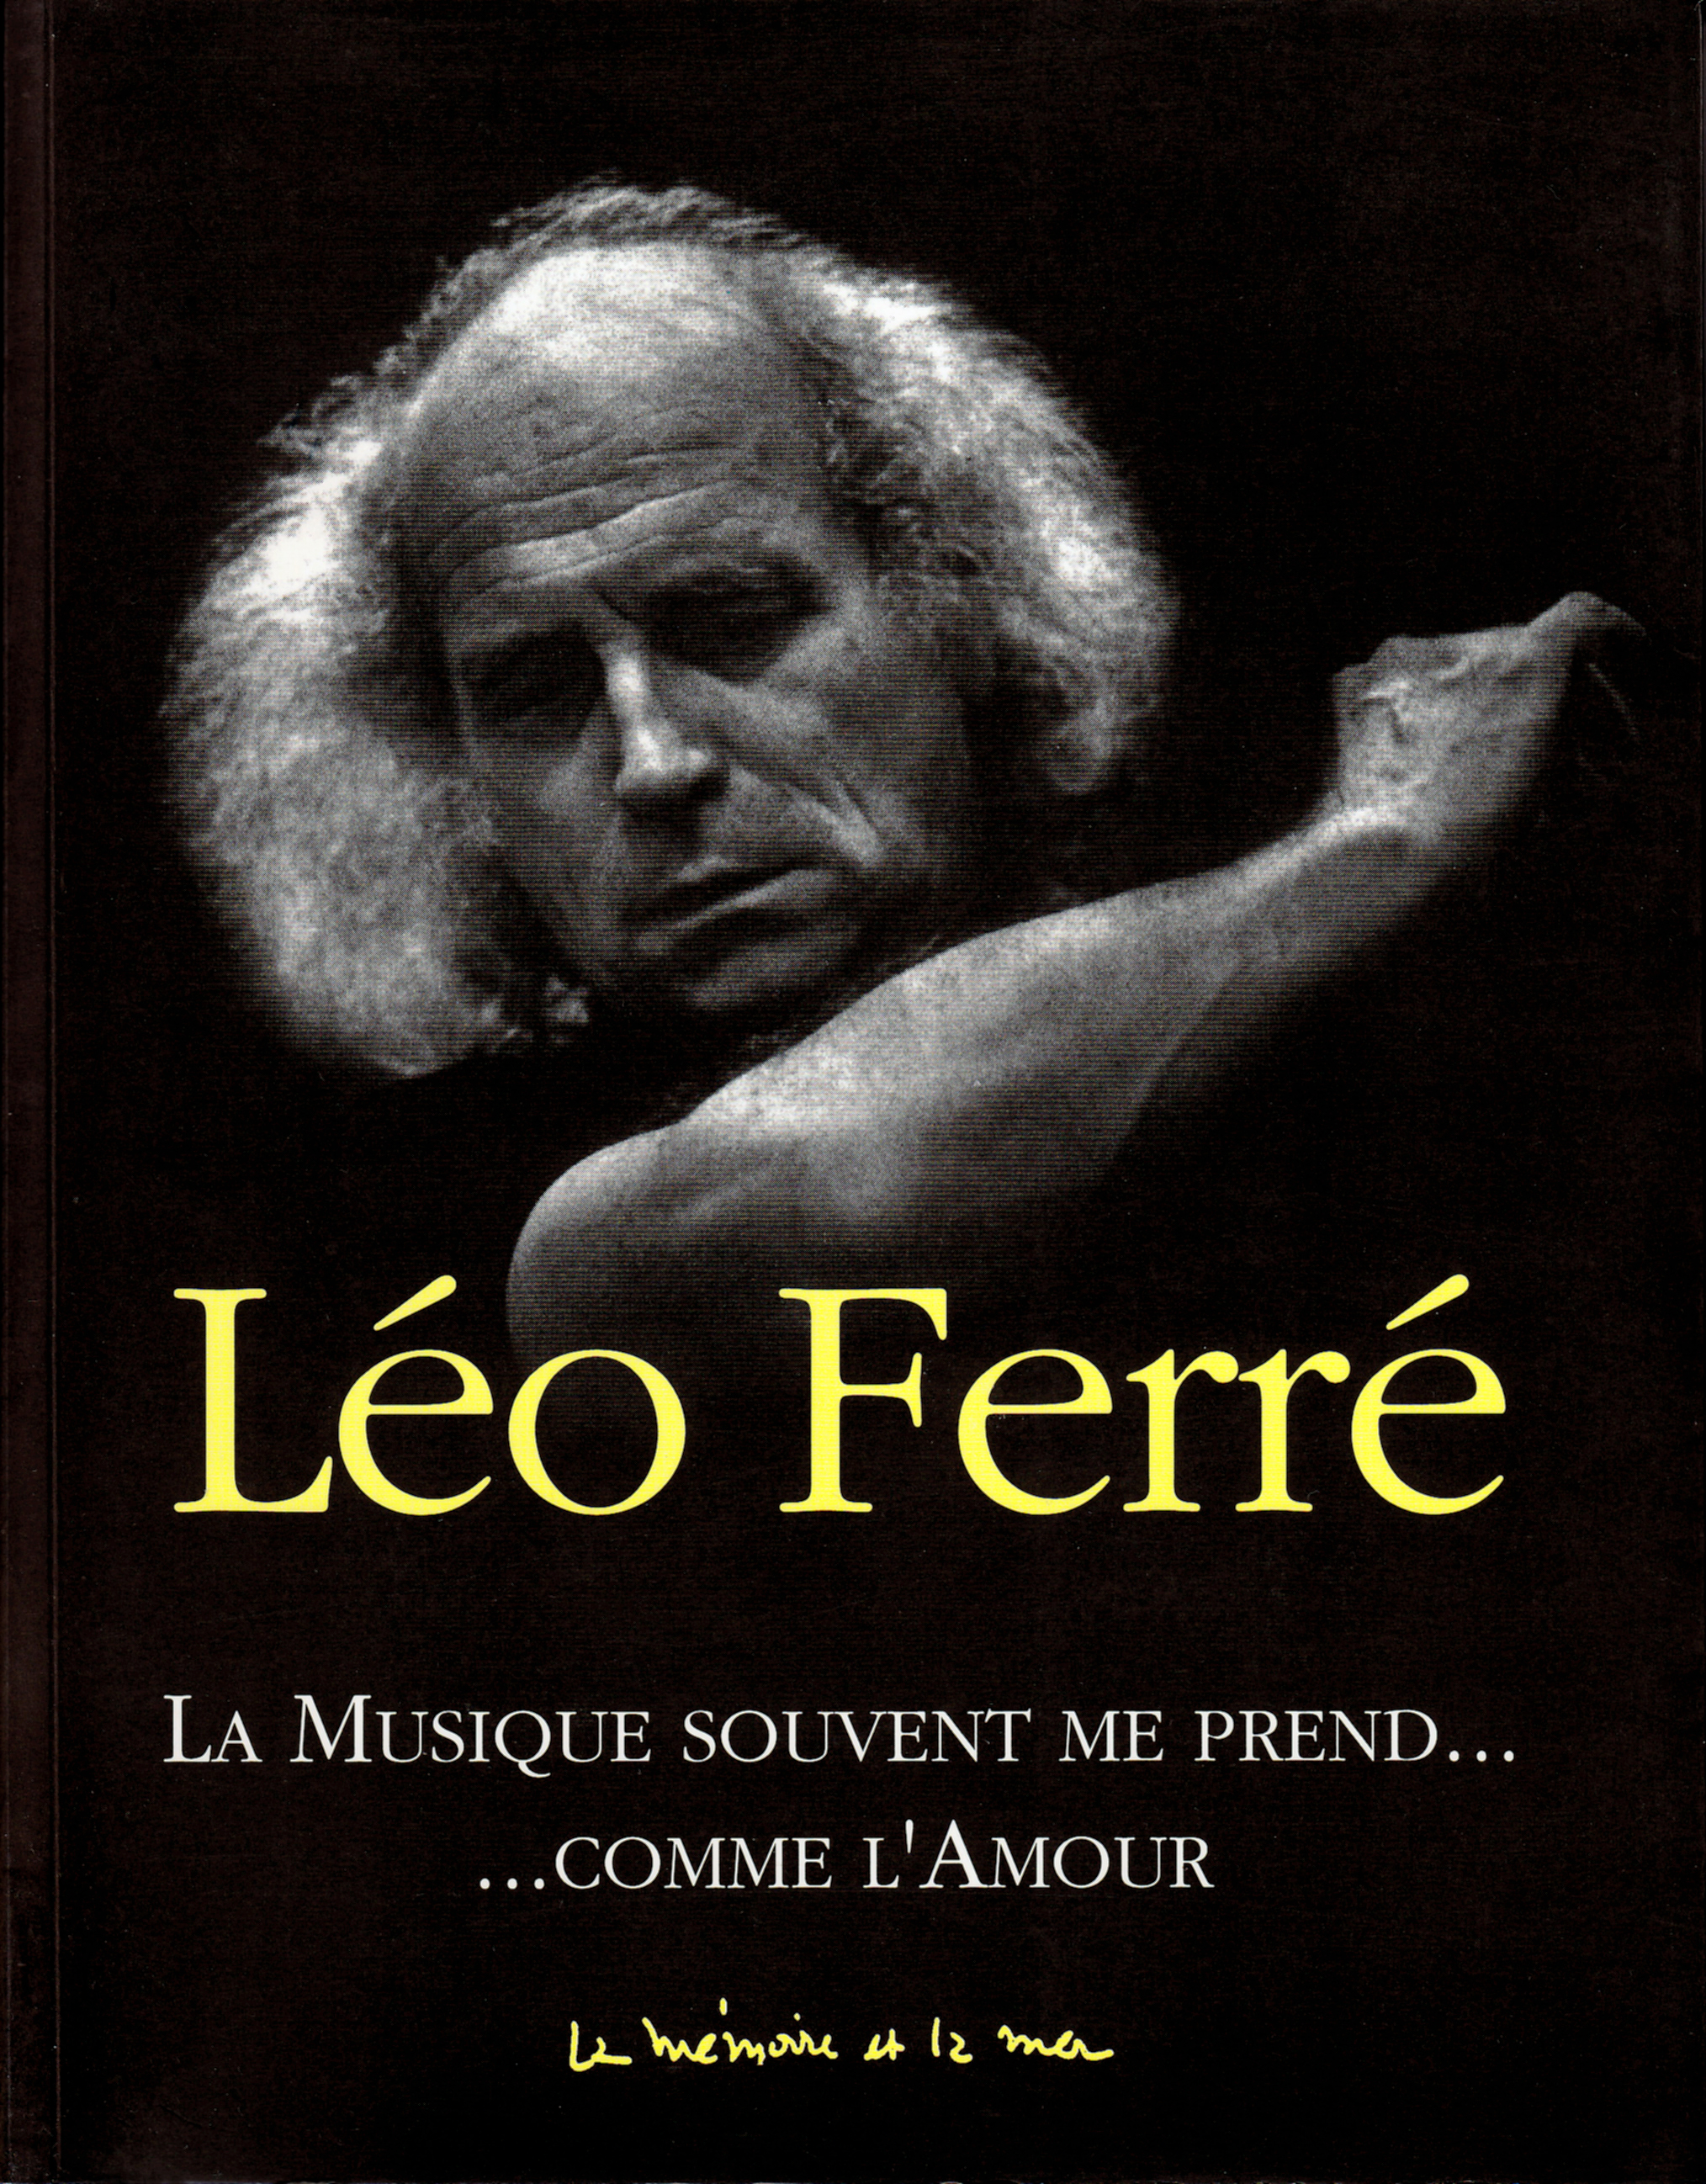 Léo Ferré - La musique souvent me prend... comme l'amour